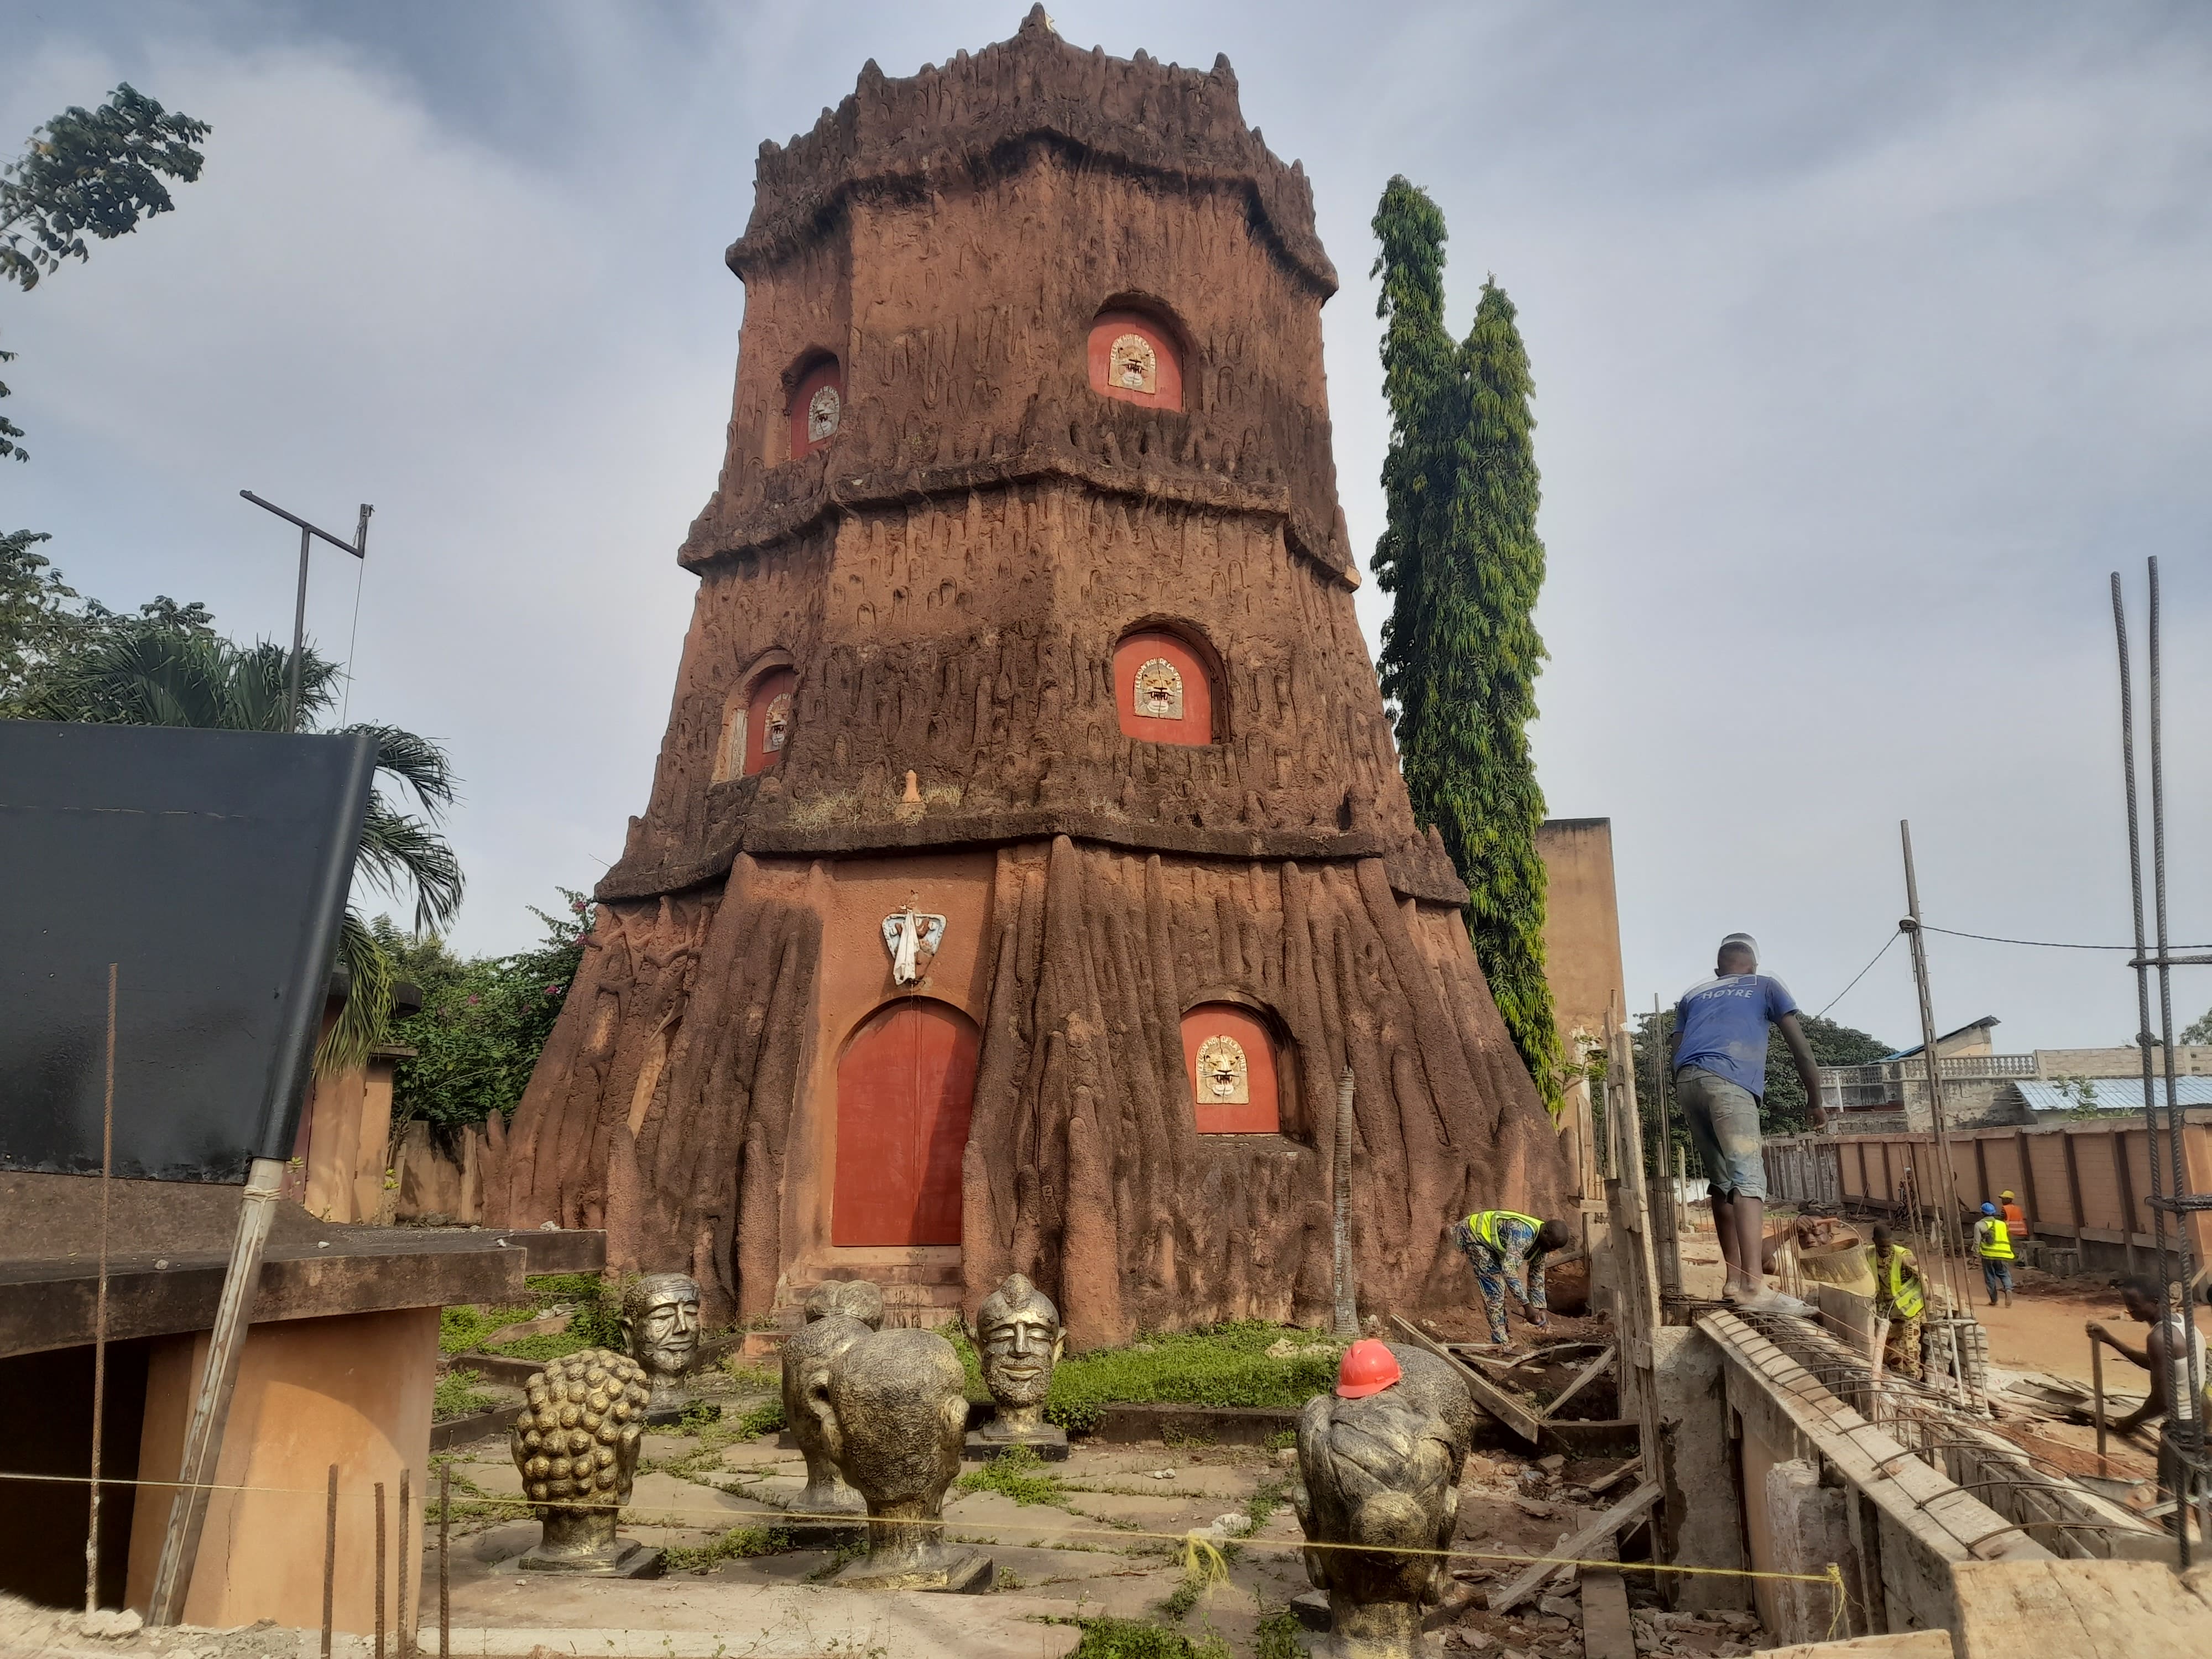 Visiter le musée Honme de Porto Novo du Bénin